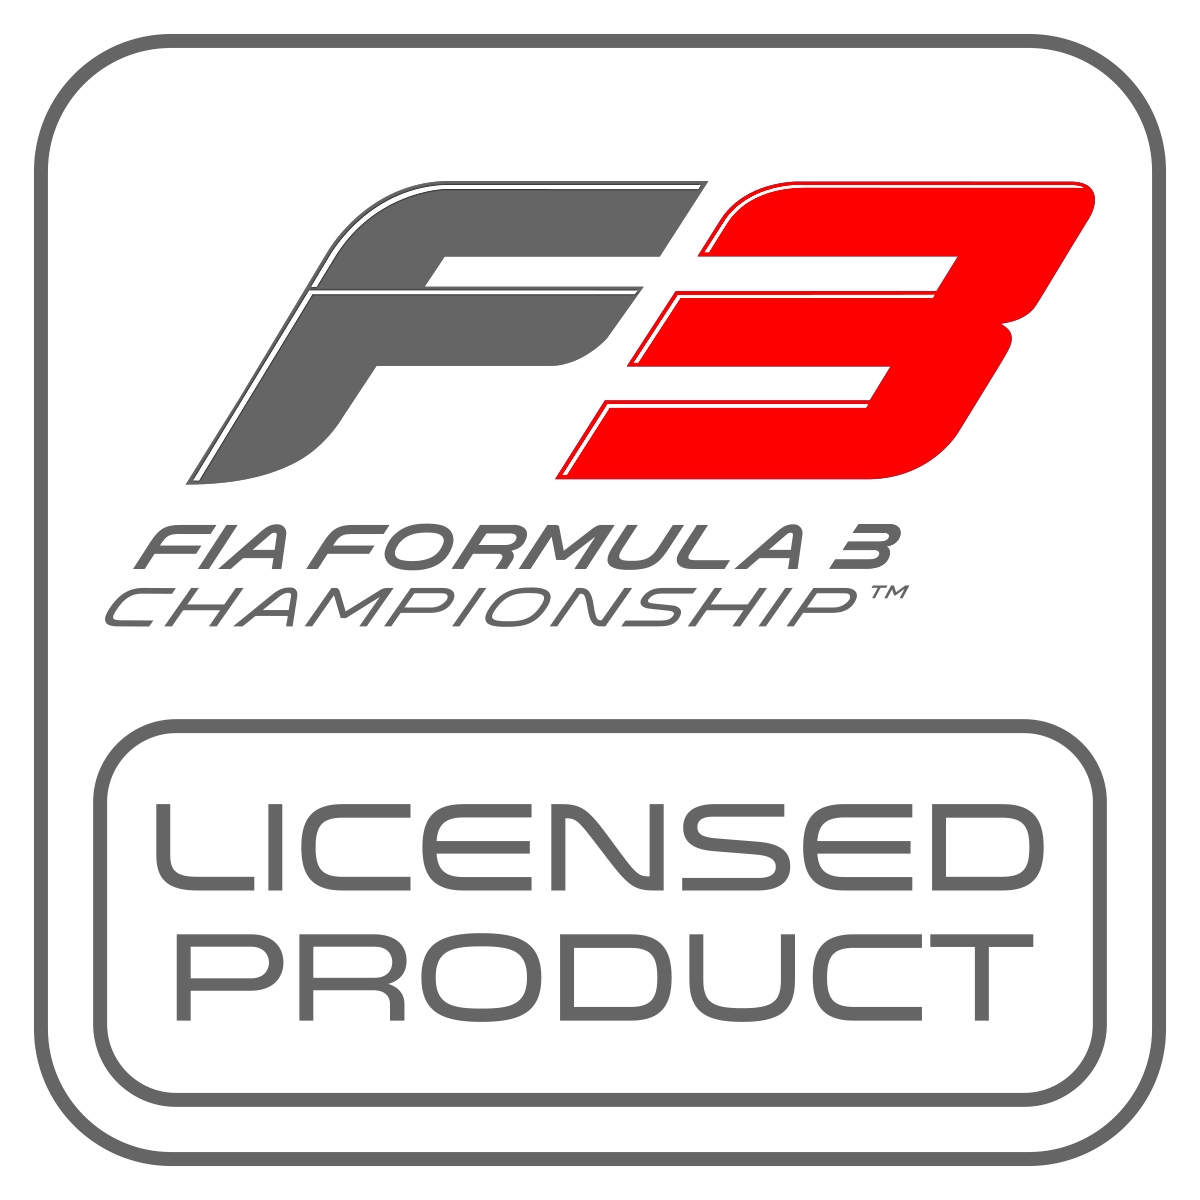 Logotipo del producto con licencia de la F3